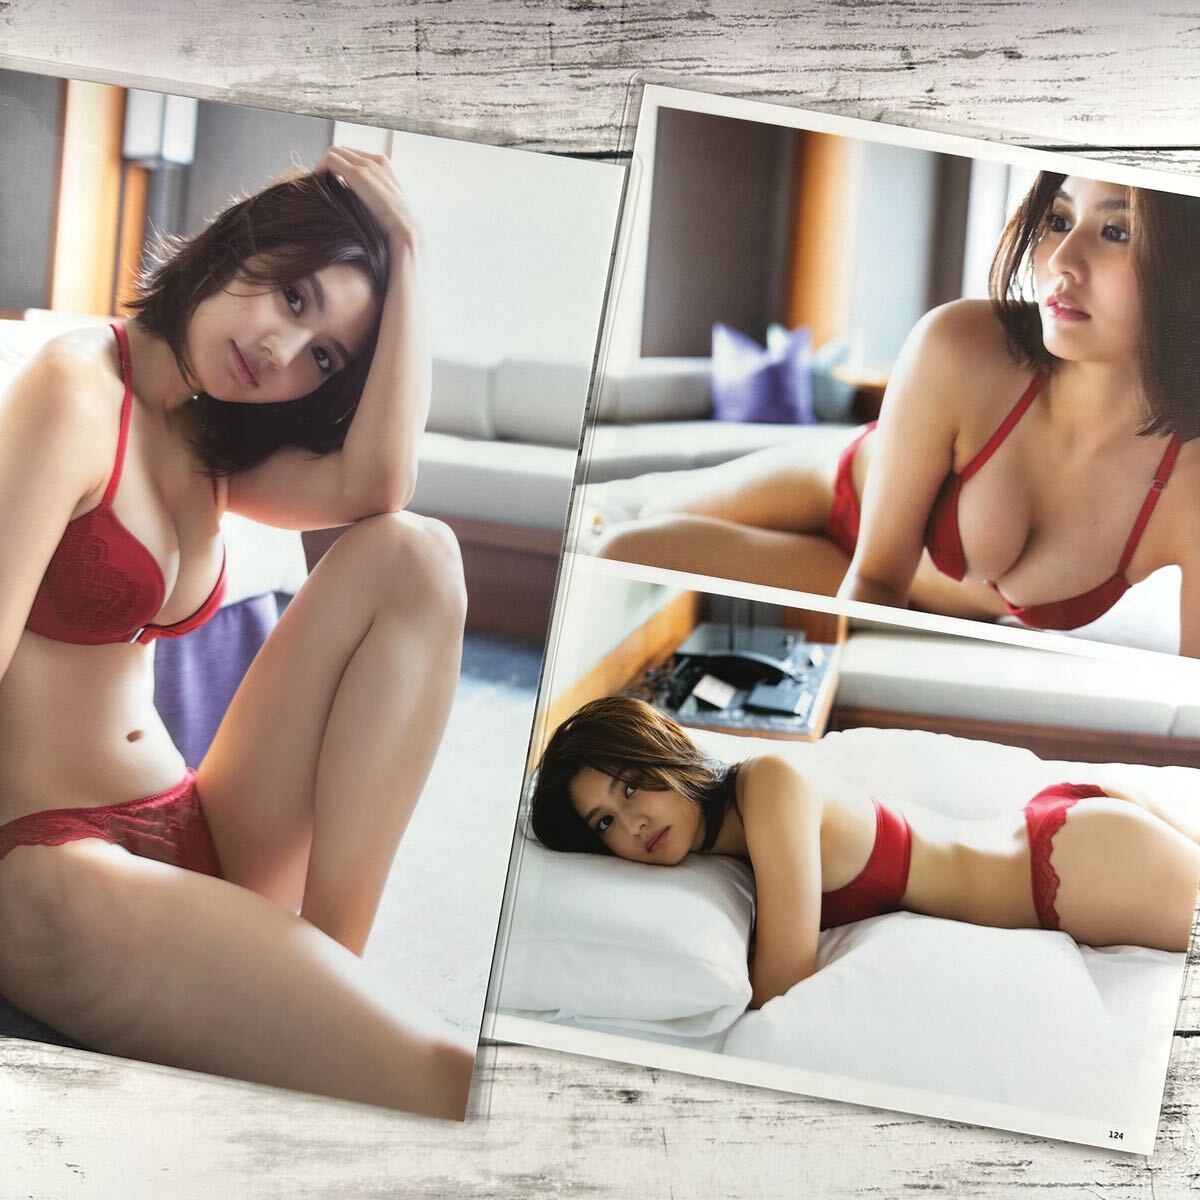 [ высокое качество ламинирование отделка ][...] журнал вырезки 11P A4 плёнка купальный костюм bikini model актер женщина super 